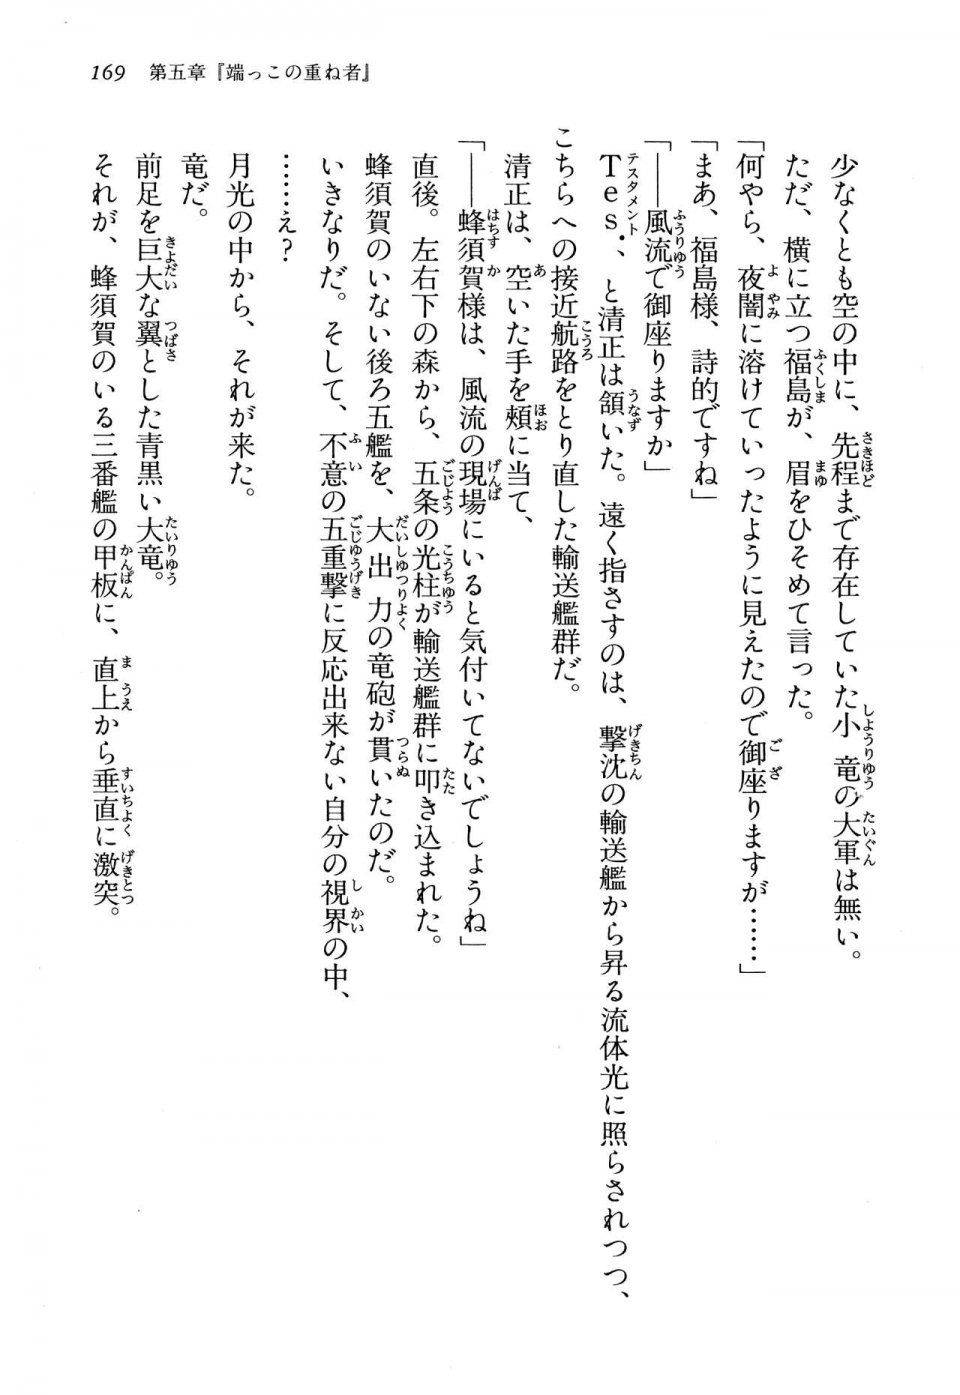 Kyoukai Senjou no Horizon LN Vol 13(6A) - Photo #169